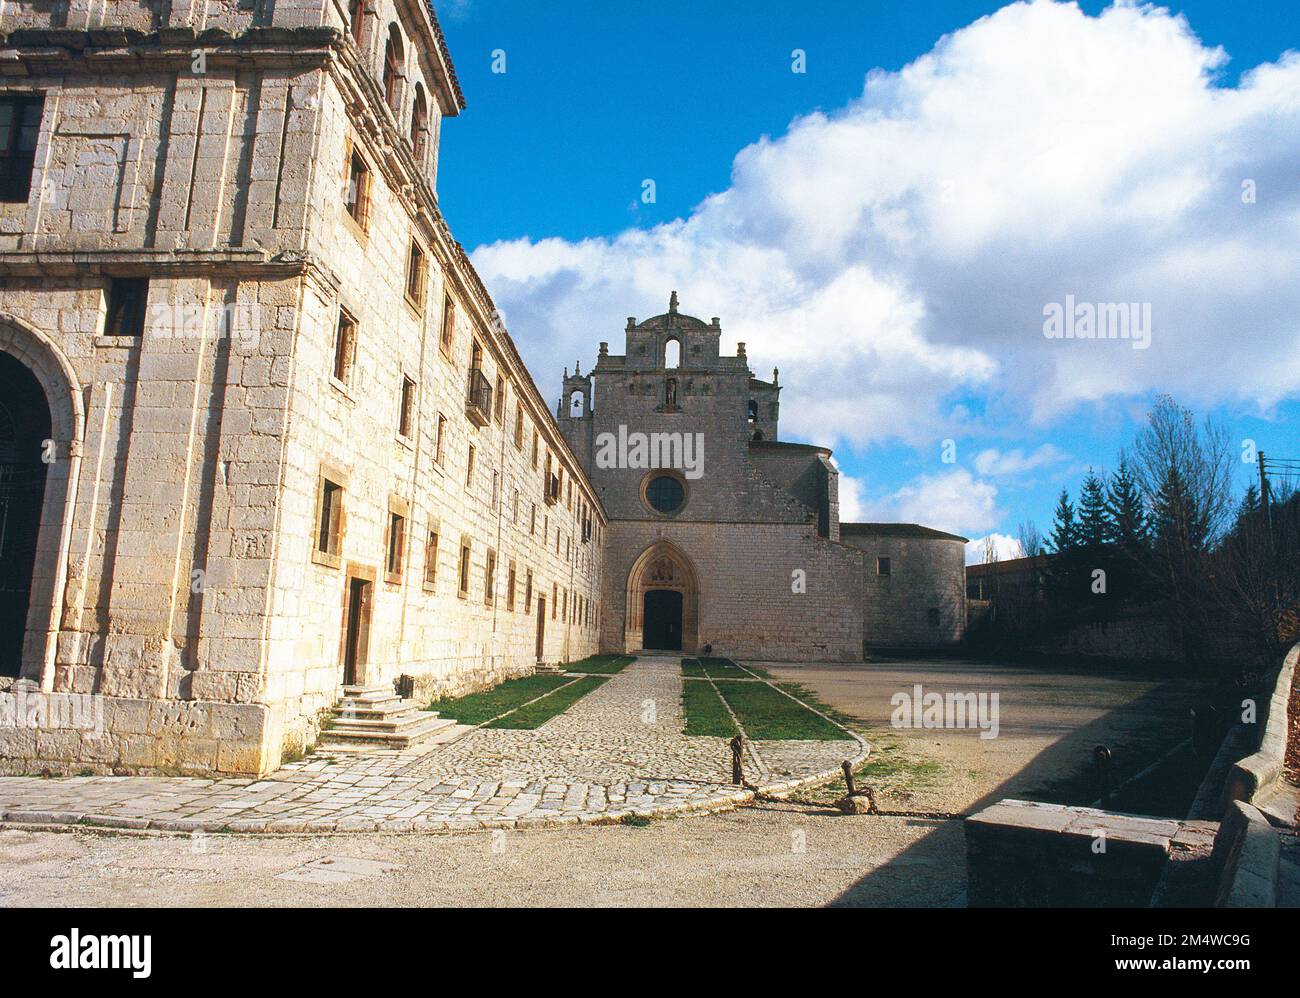 Facade of the monastery. San Pedro de Cardeña, Burgos province, Castilla Leon, Spain. Stock Photo